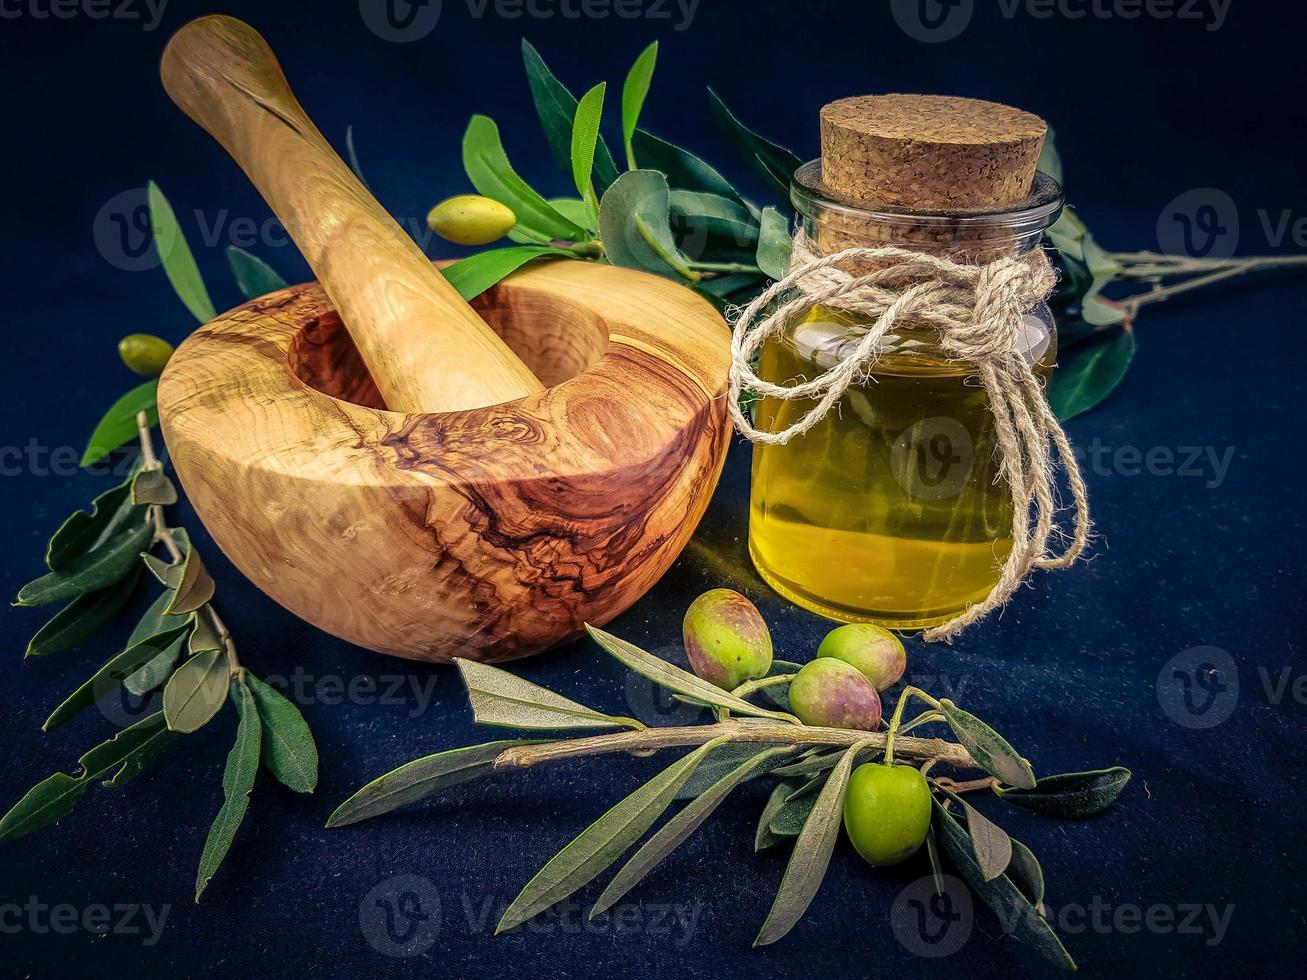 aceite de oliva virgen extra prensado en frio foto